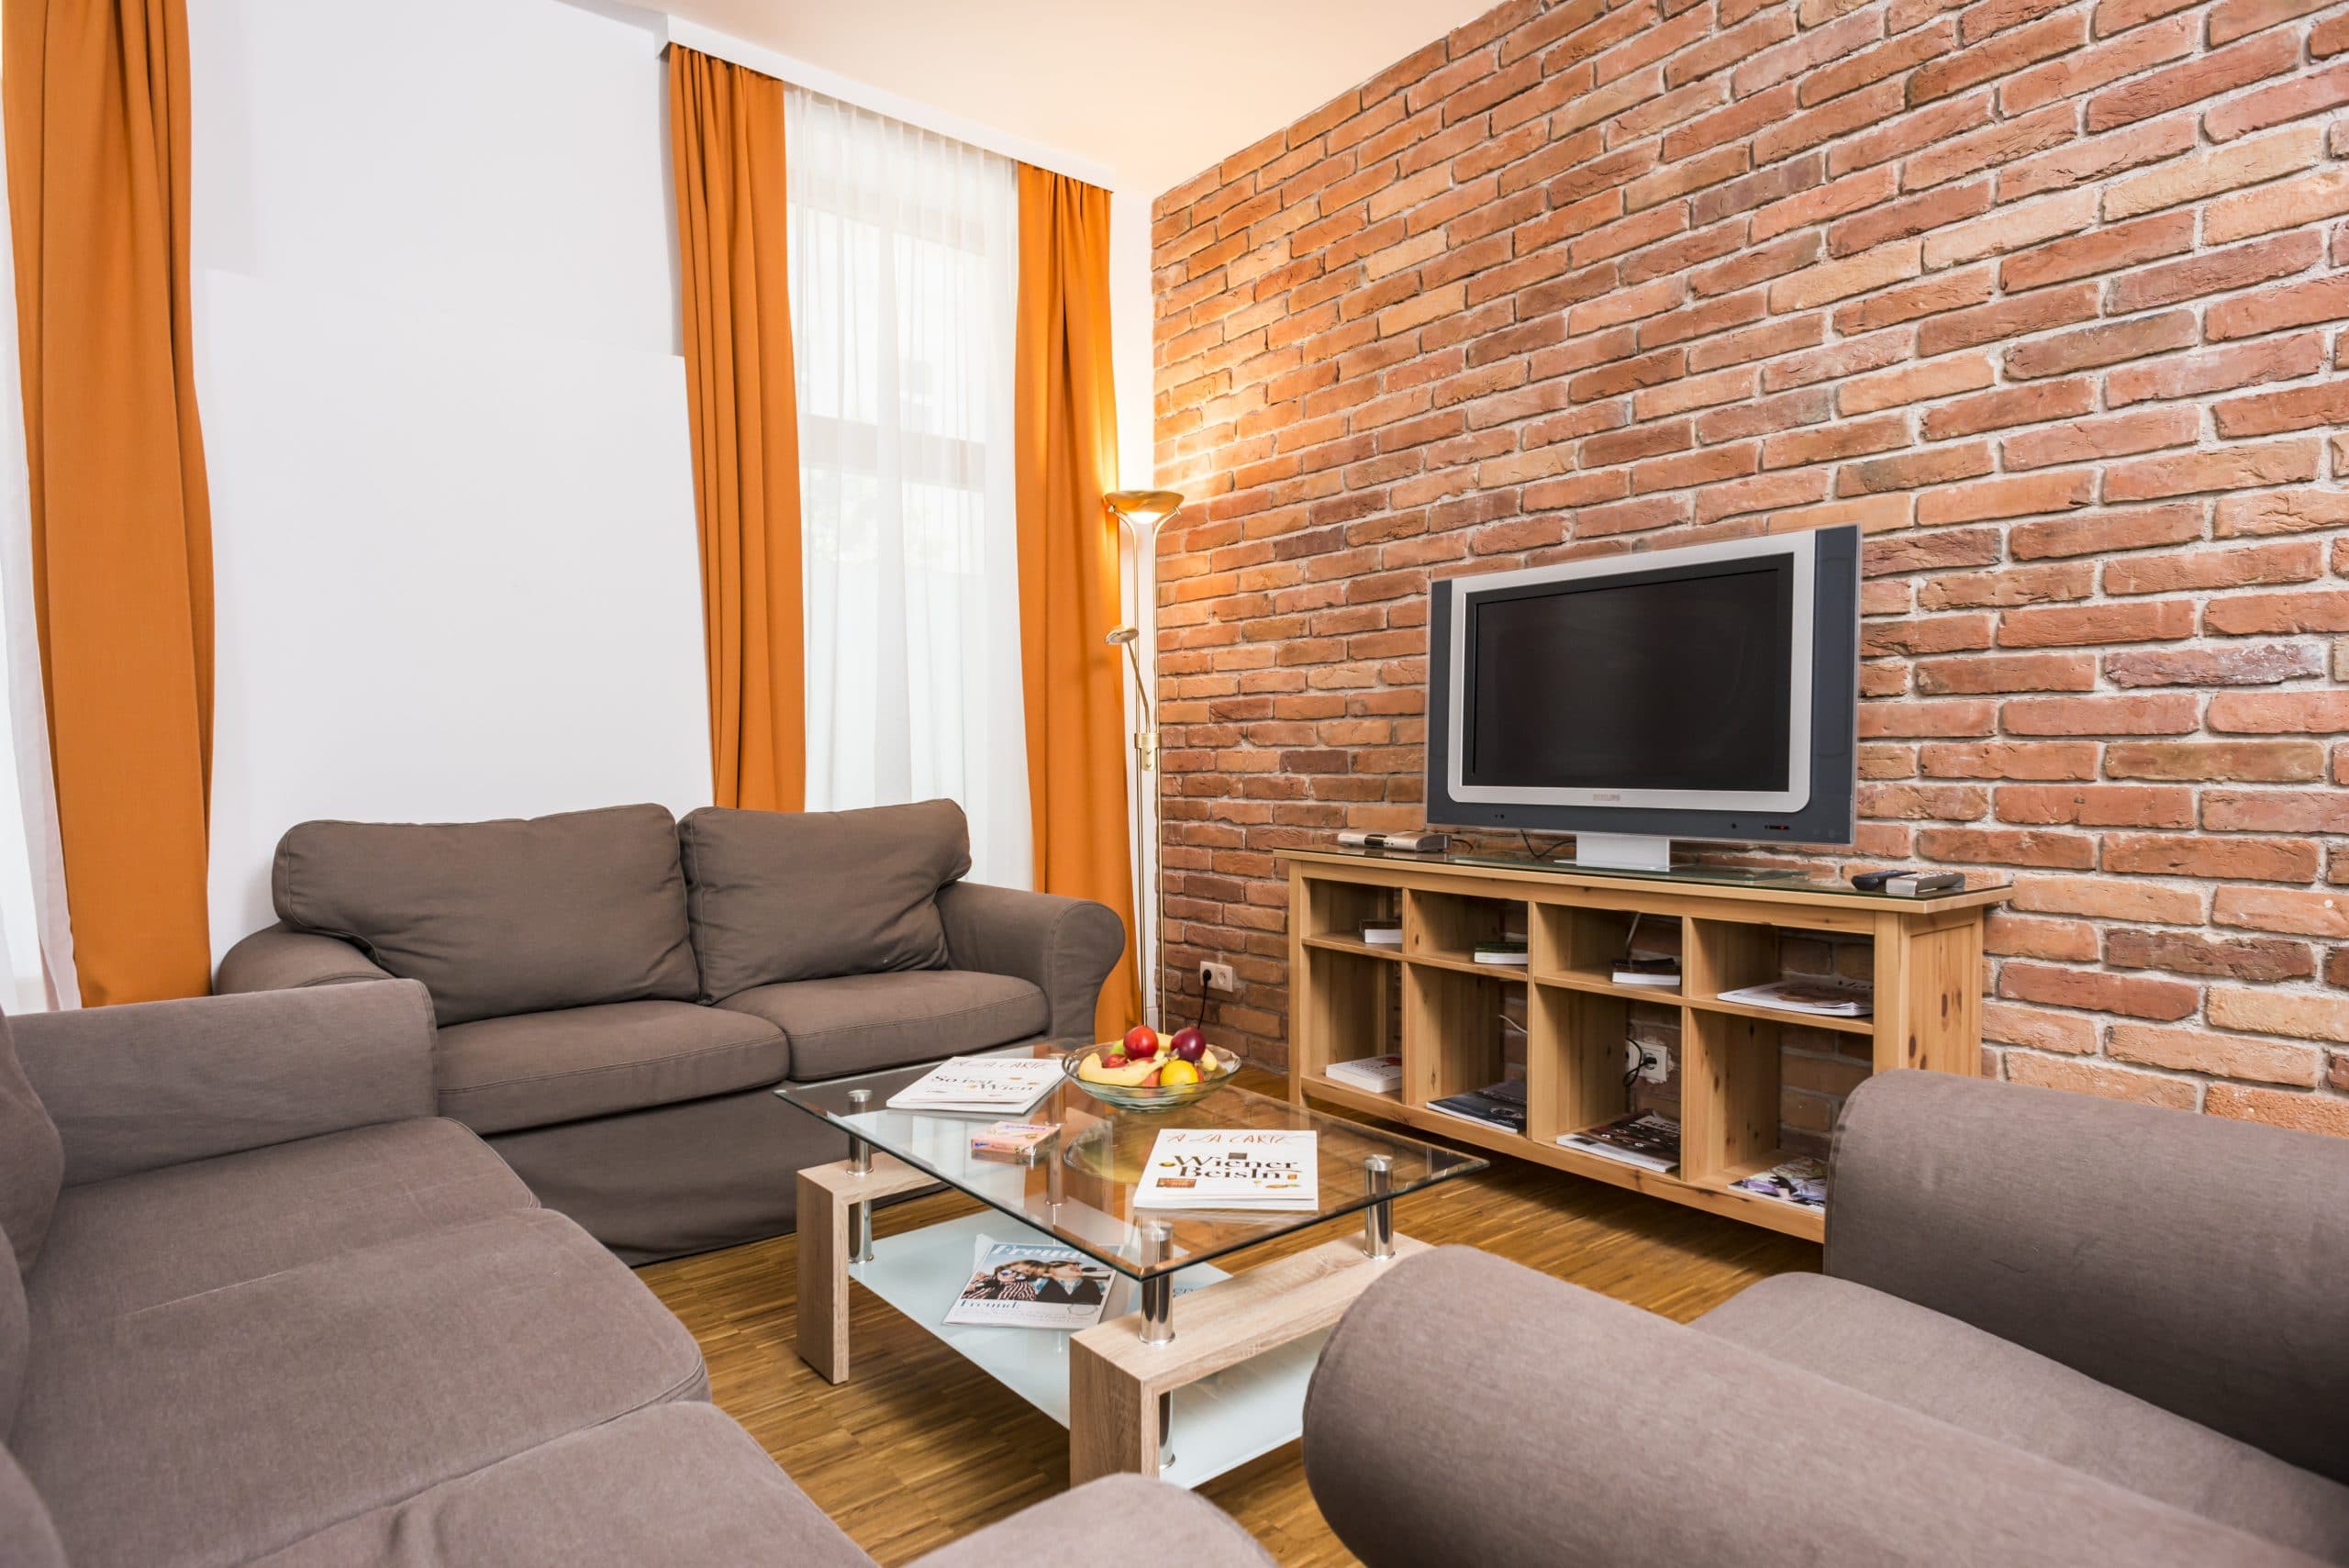 Apartment 9 Wohnzimmer Couch und Fernseher